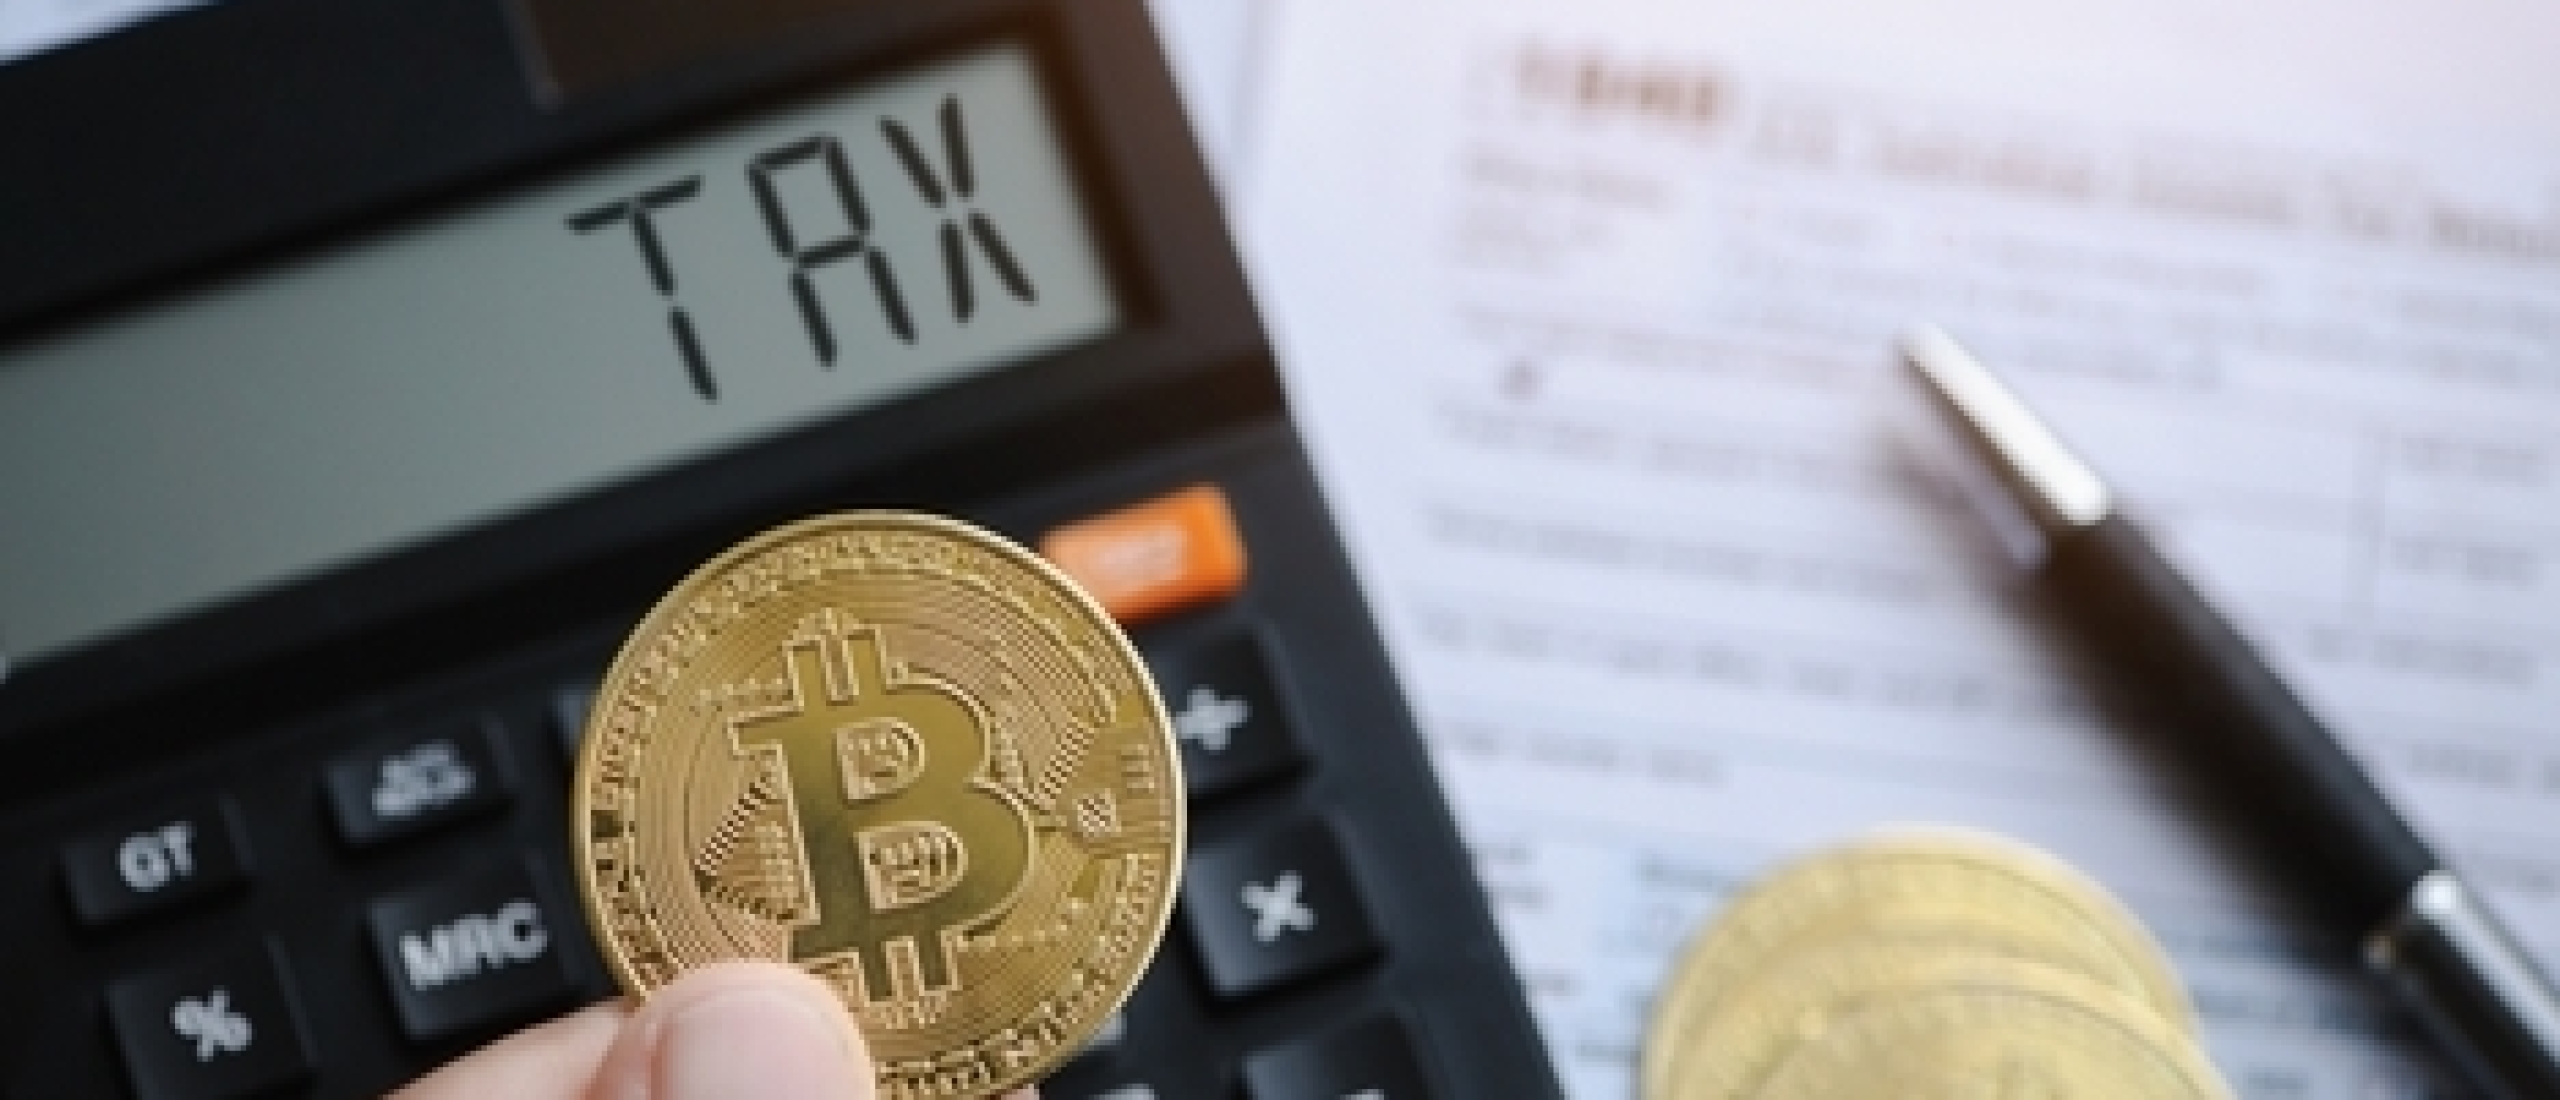 Moet je bitcoins en andere cryptovaluta in de aangifte inkomstenbelasting vermelden?